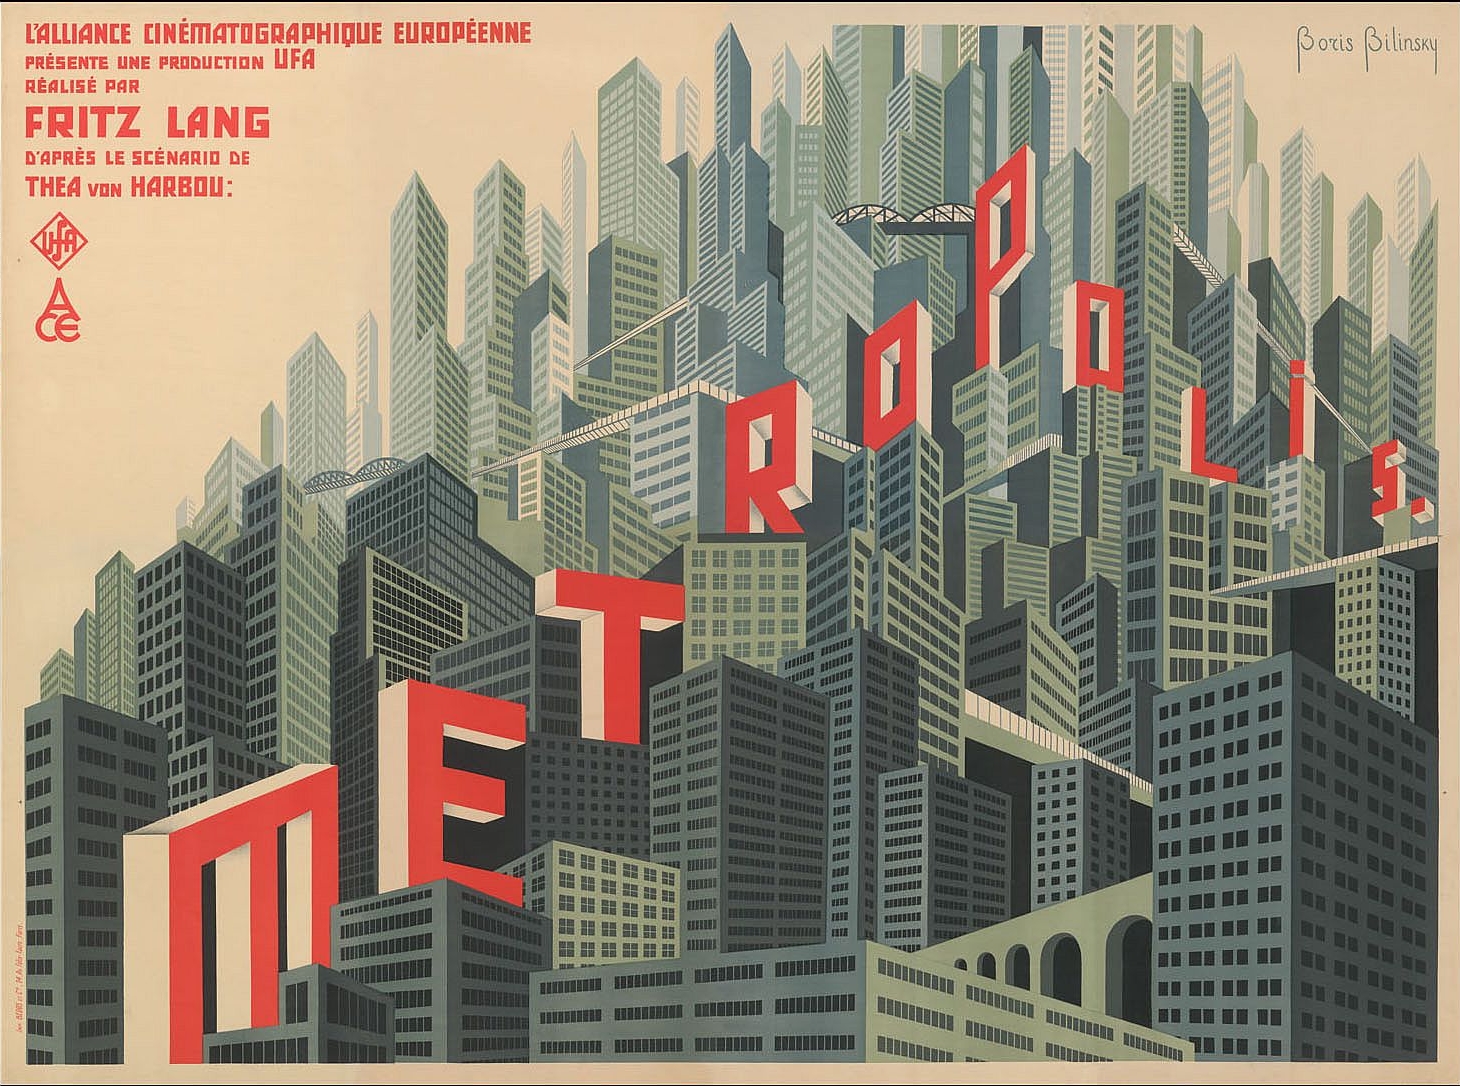 Von Boris Bilinsky gestaltetes Plakat für den UFA-Film Metropolis von Fritz Lang, hier in einer französisch-sprachigen Variante Date	1927 Source	Internet Author	Boris Konstantinowitsch Bilinski